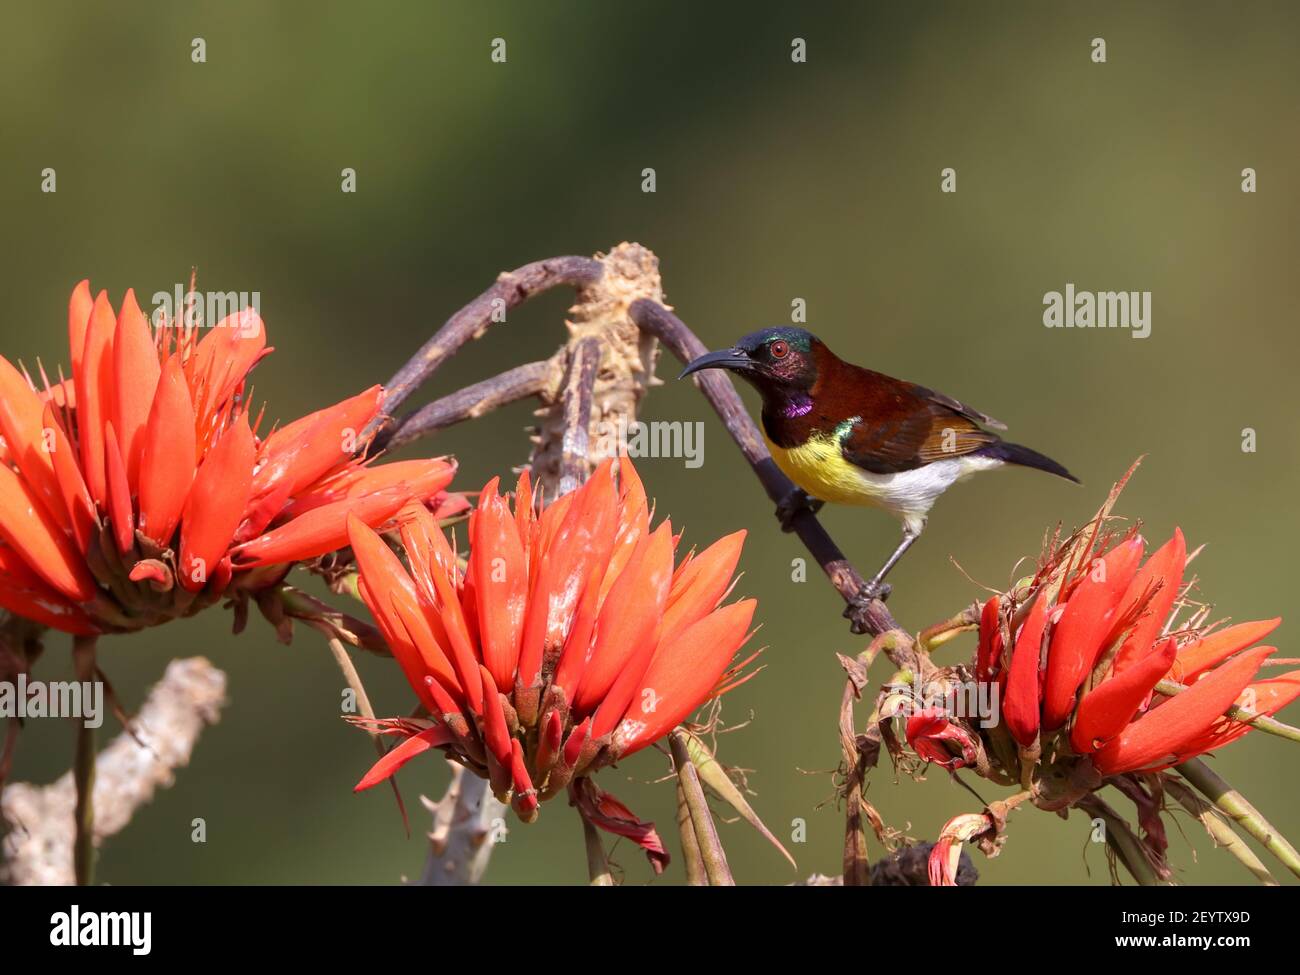 Le sunbird à rumpes violettes est un sunbird endémique au sous-continent indien. Comme les autres oiseaux solaires, ils sont de petite taille, se nourrissant principalement sur le nectar mais sur le somet Banque D'Images